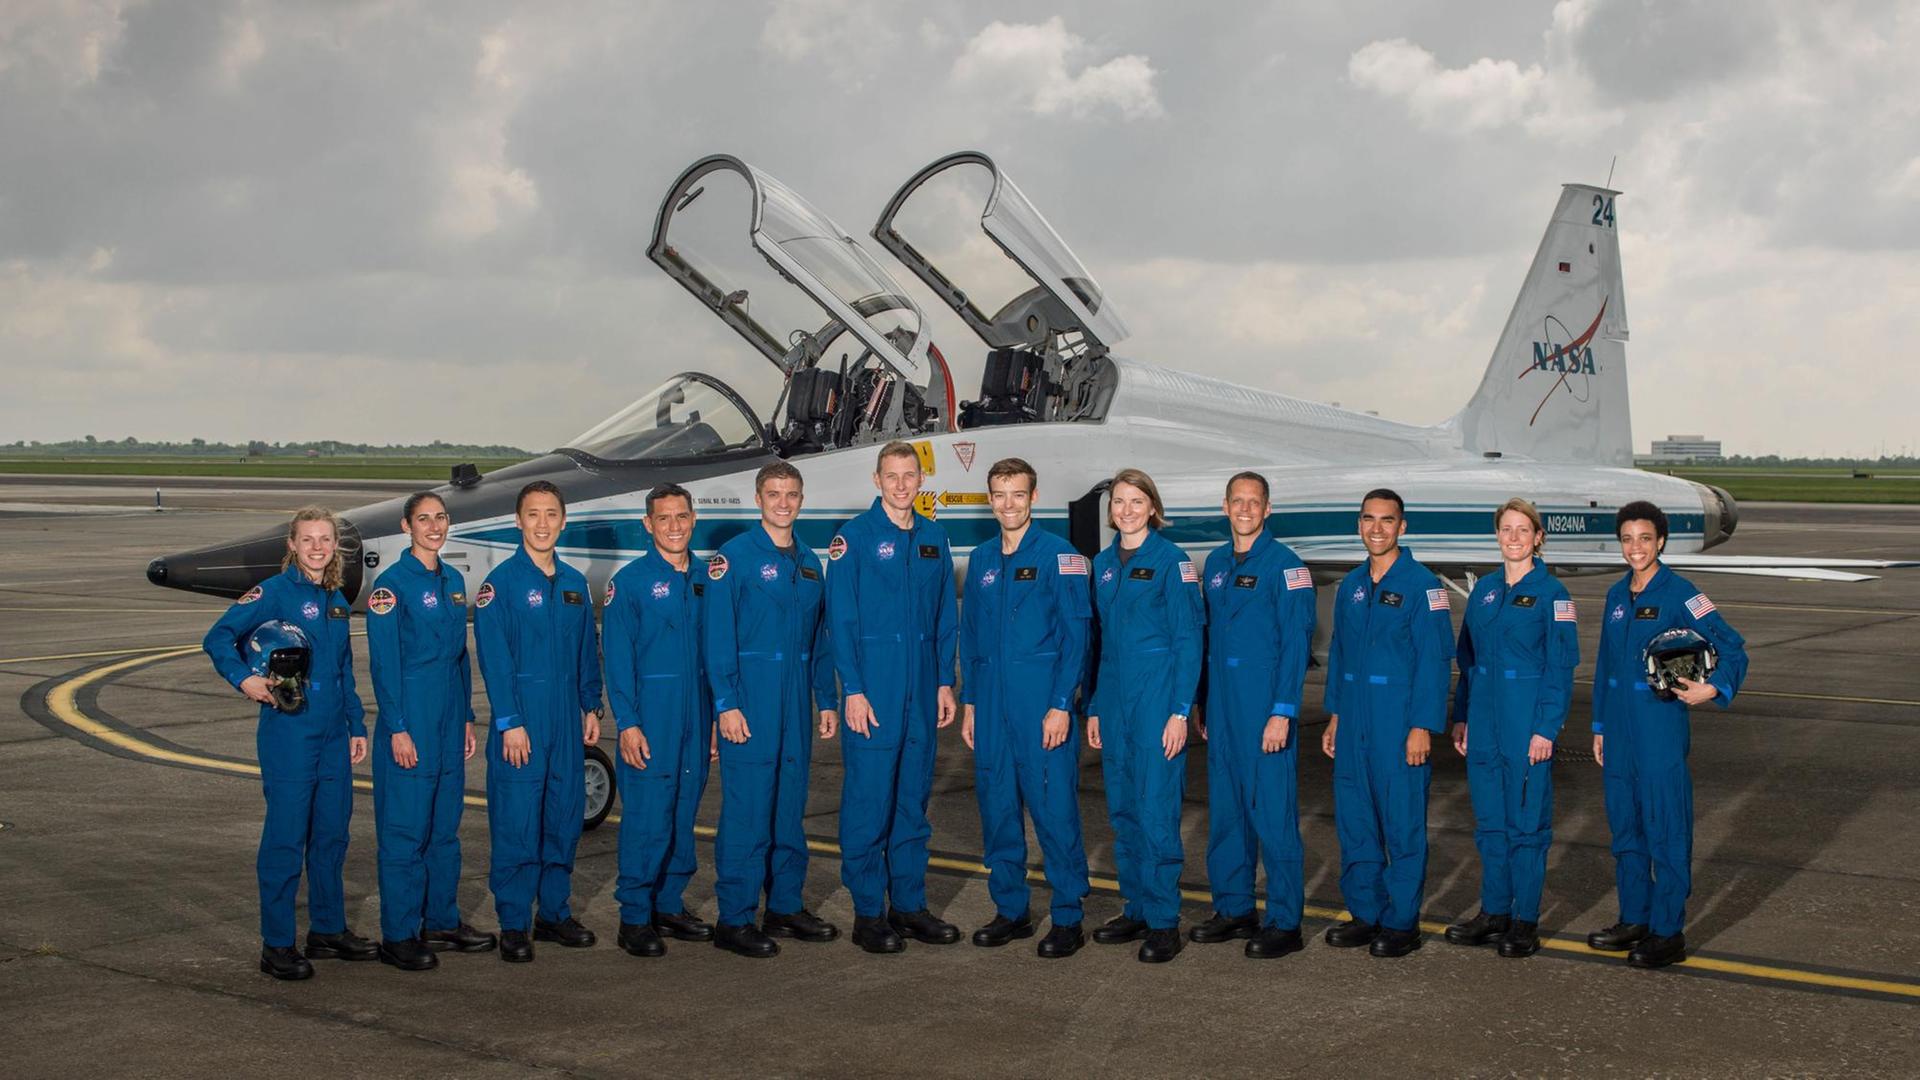 : Zur ISS, zum Mond oder ganz woanders hin? Die neuen Astronautenkandidatinnen und -kandidaten blicken in eine etwas ungewisse Zukunft